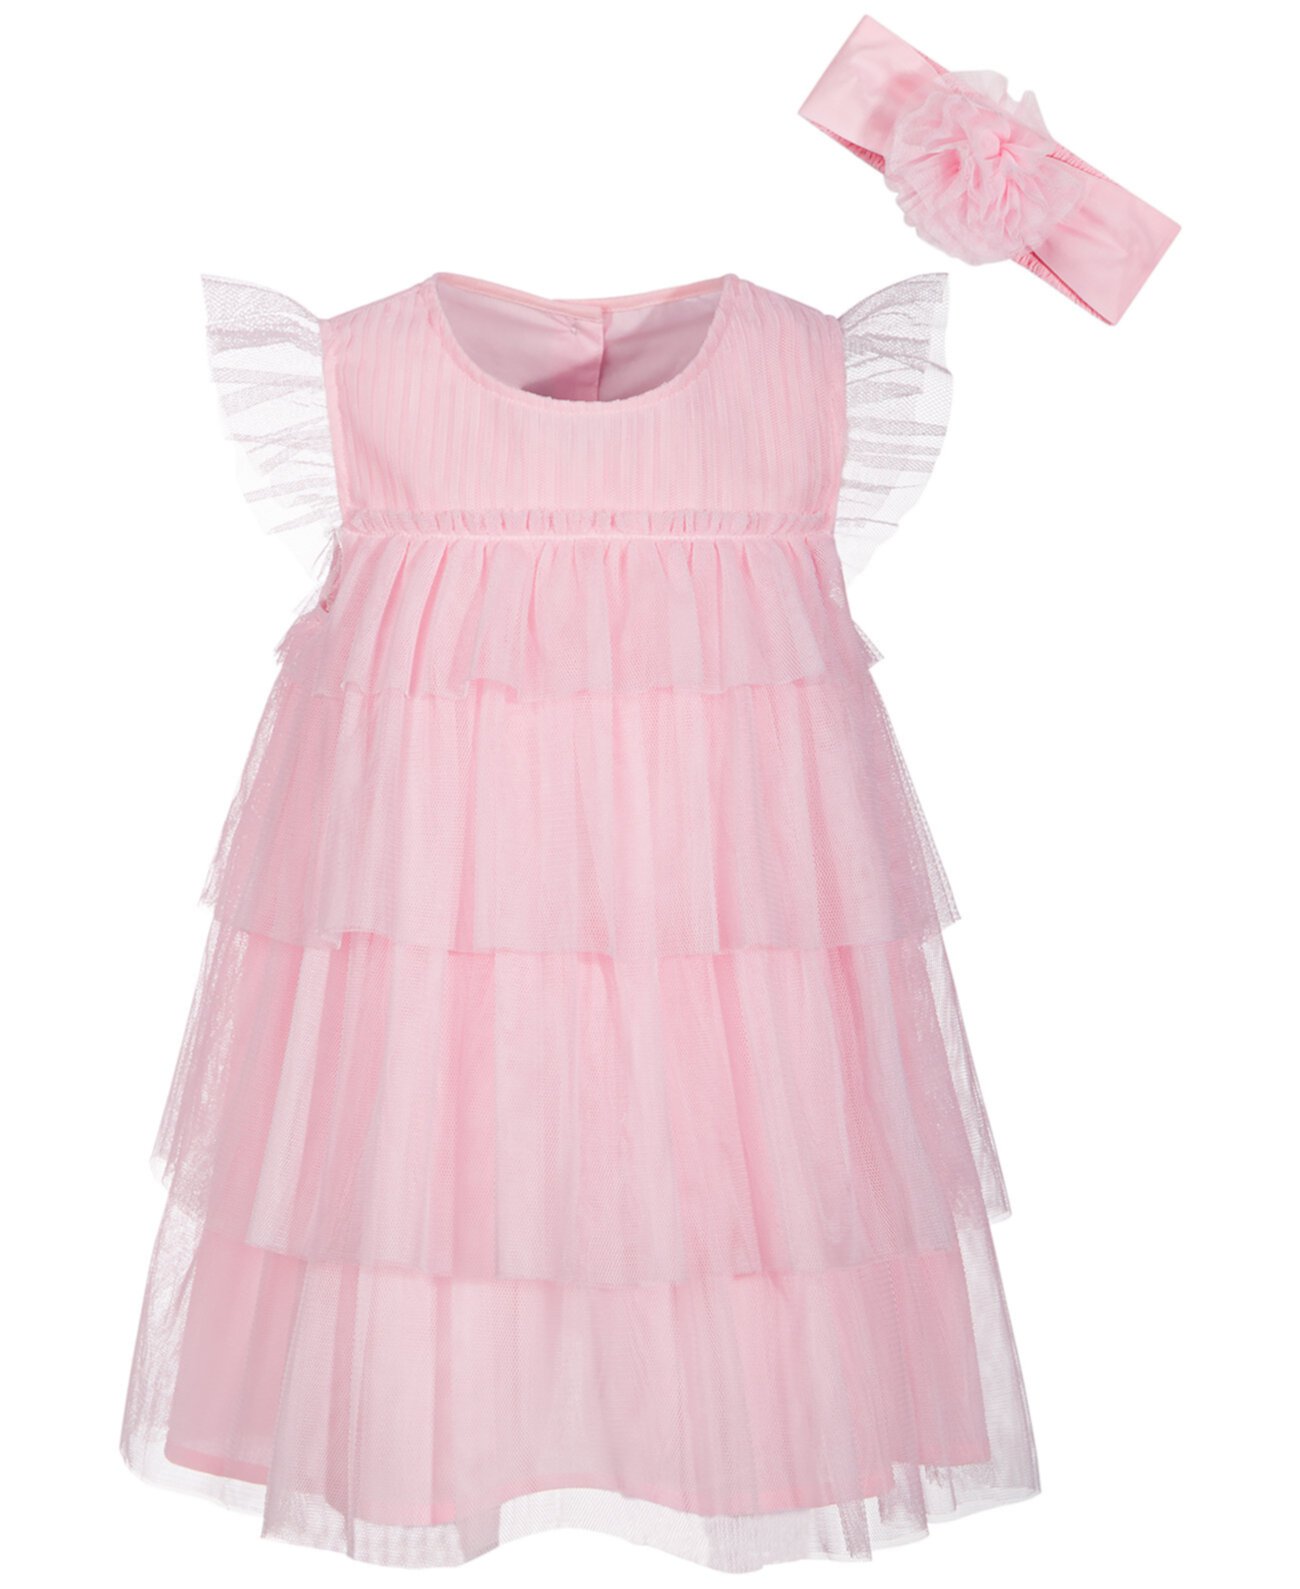 Эффектное платье для маленьких девочек, созданное для Macy's First Impressions